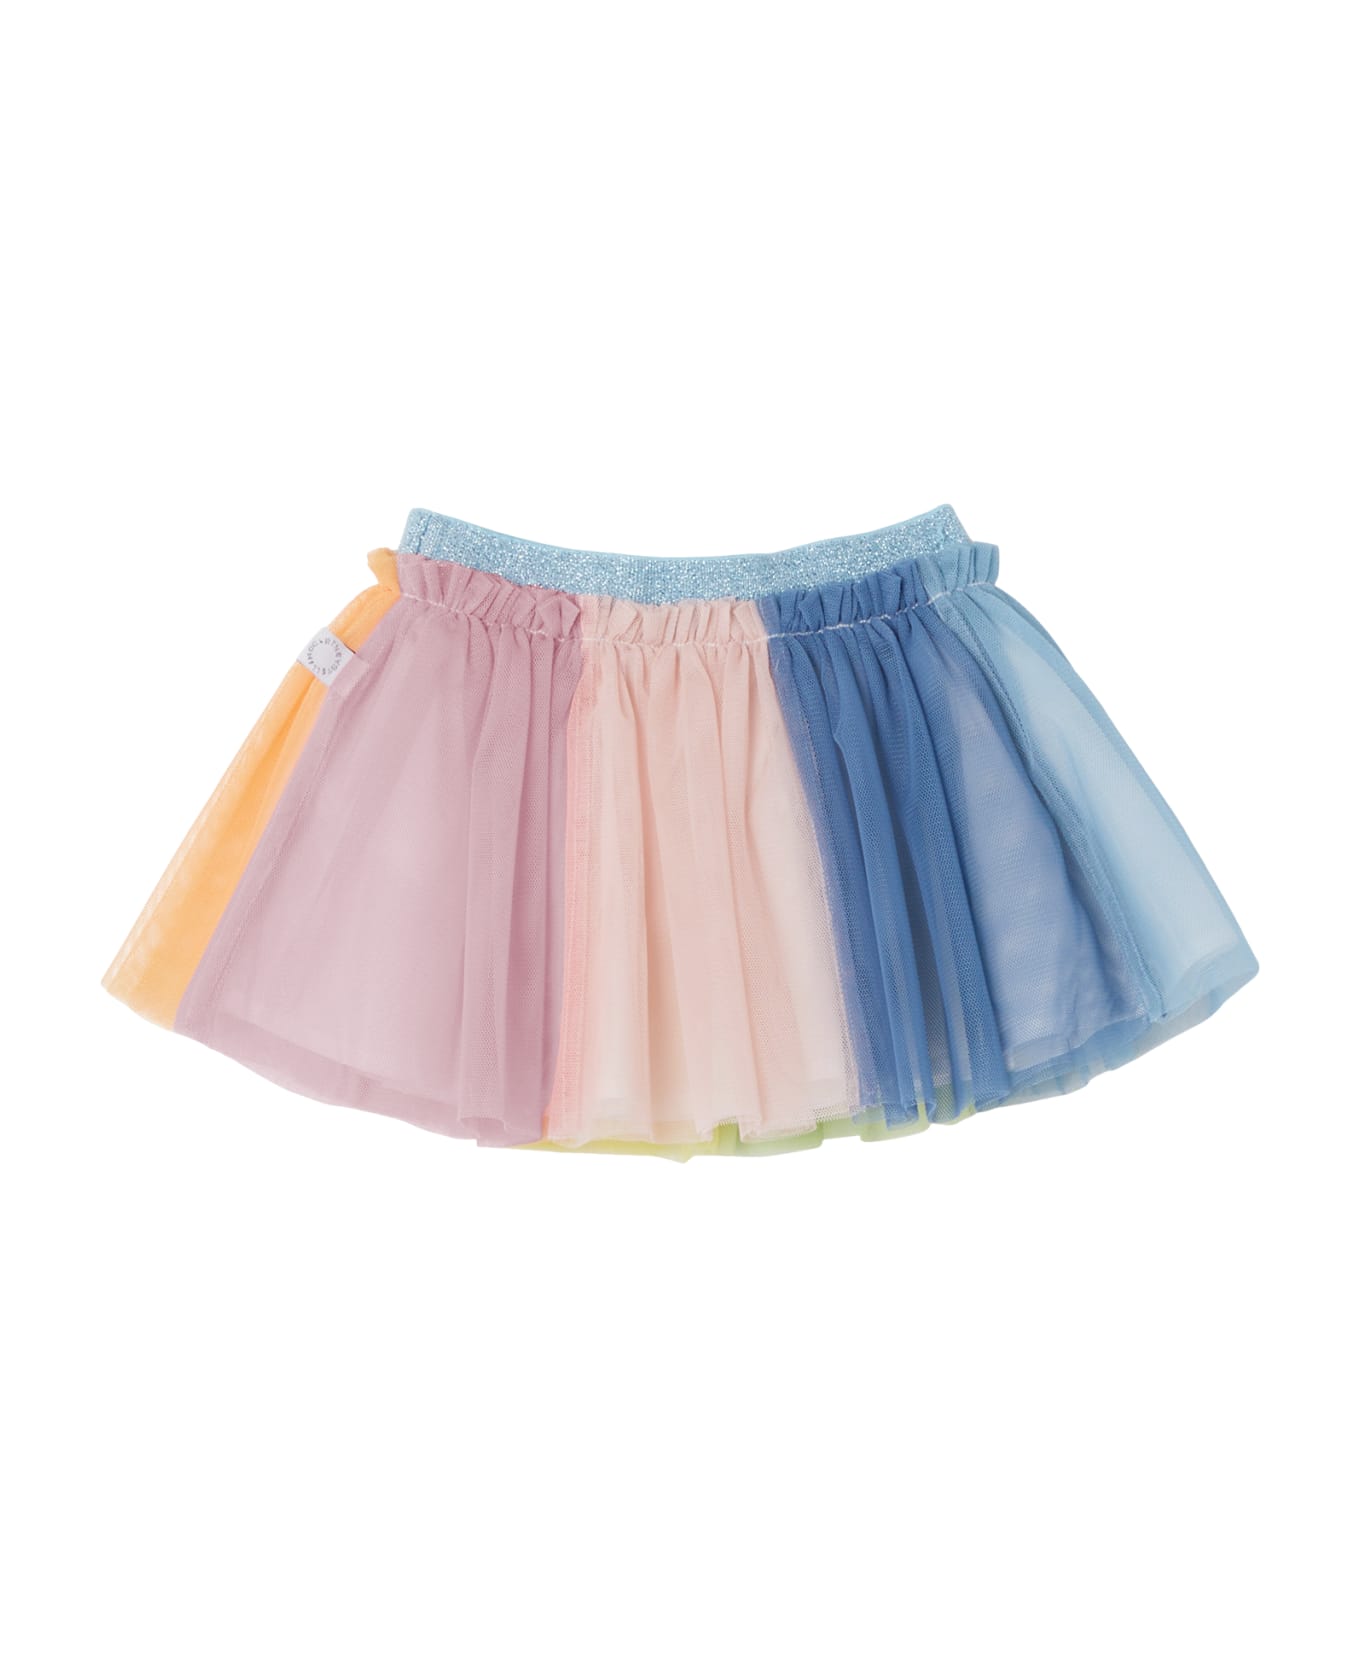 Stella McCartney Kids Skirt - Multicolor